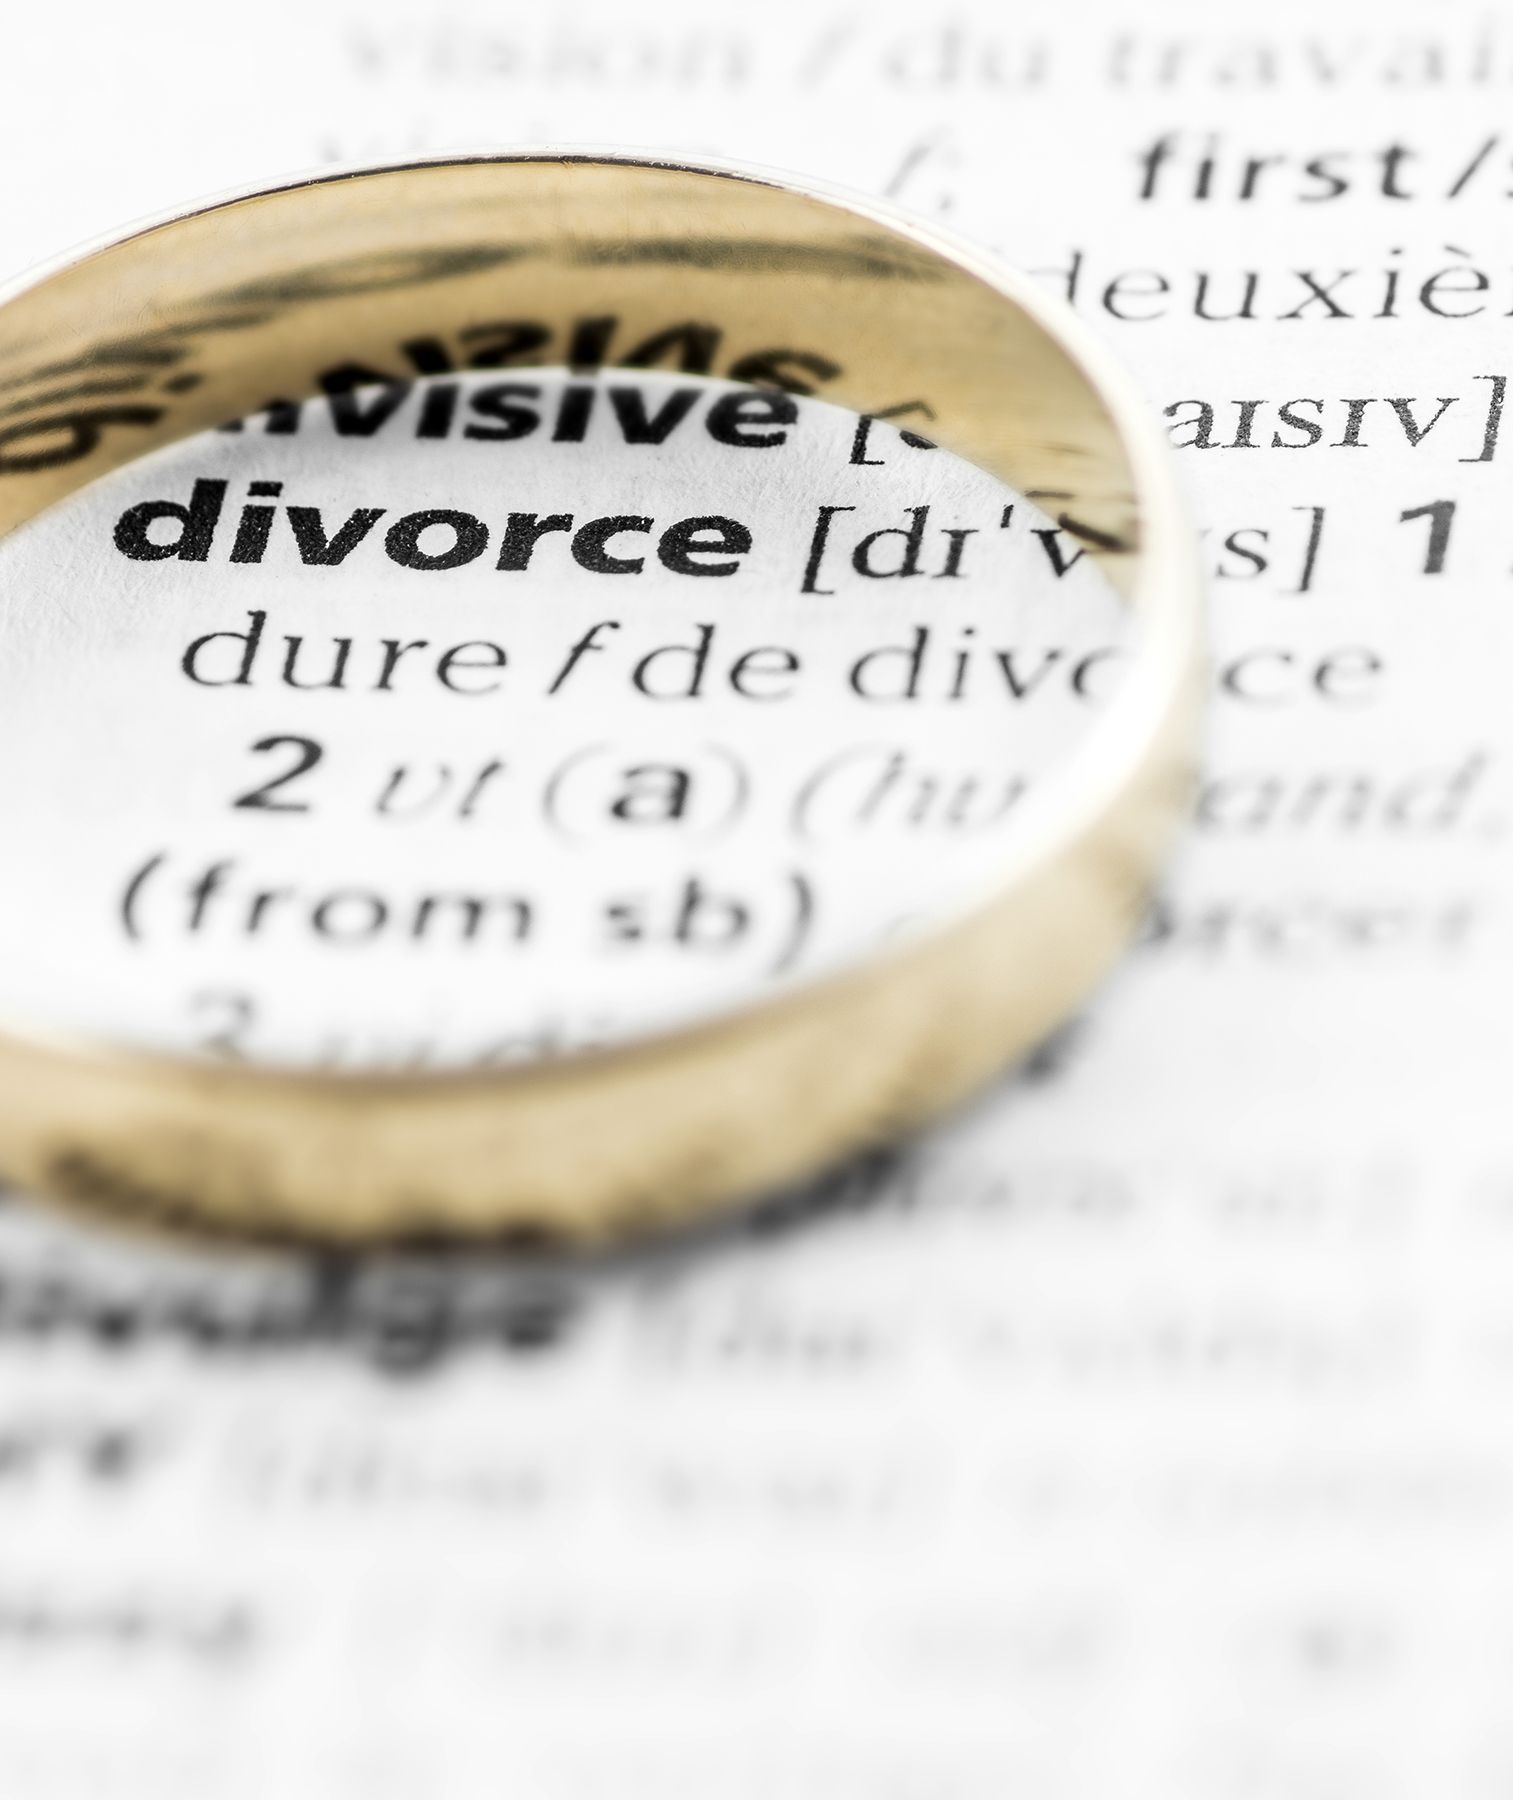 32 Միանգամայն անկեղծ խորհուրդներ այնտեղ եղած կանանց ամուսնալուծության վերաբերյալ